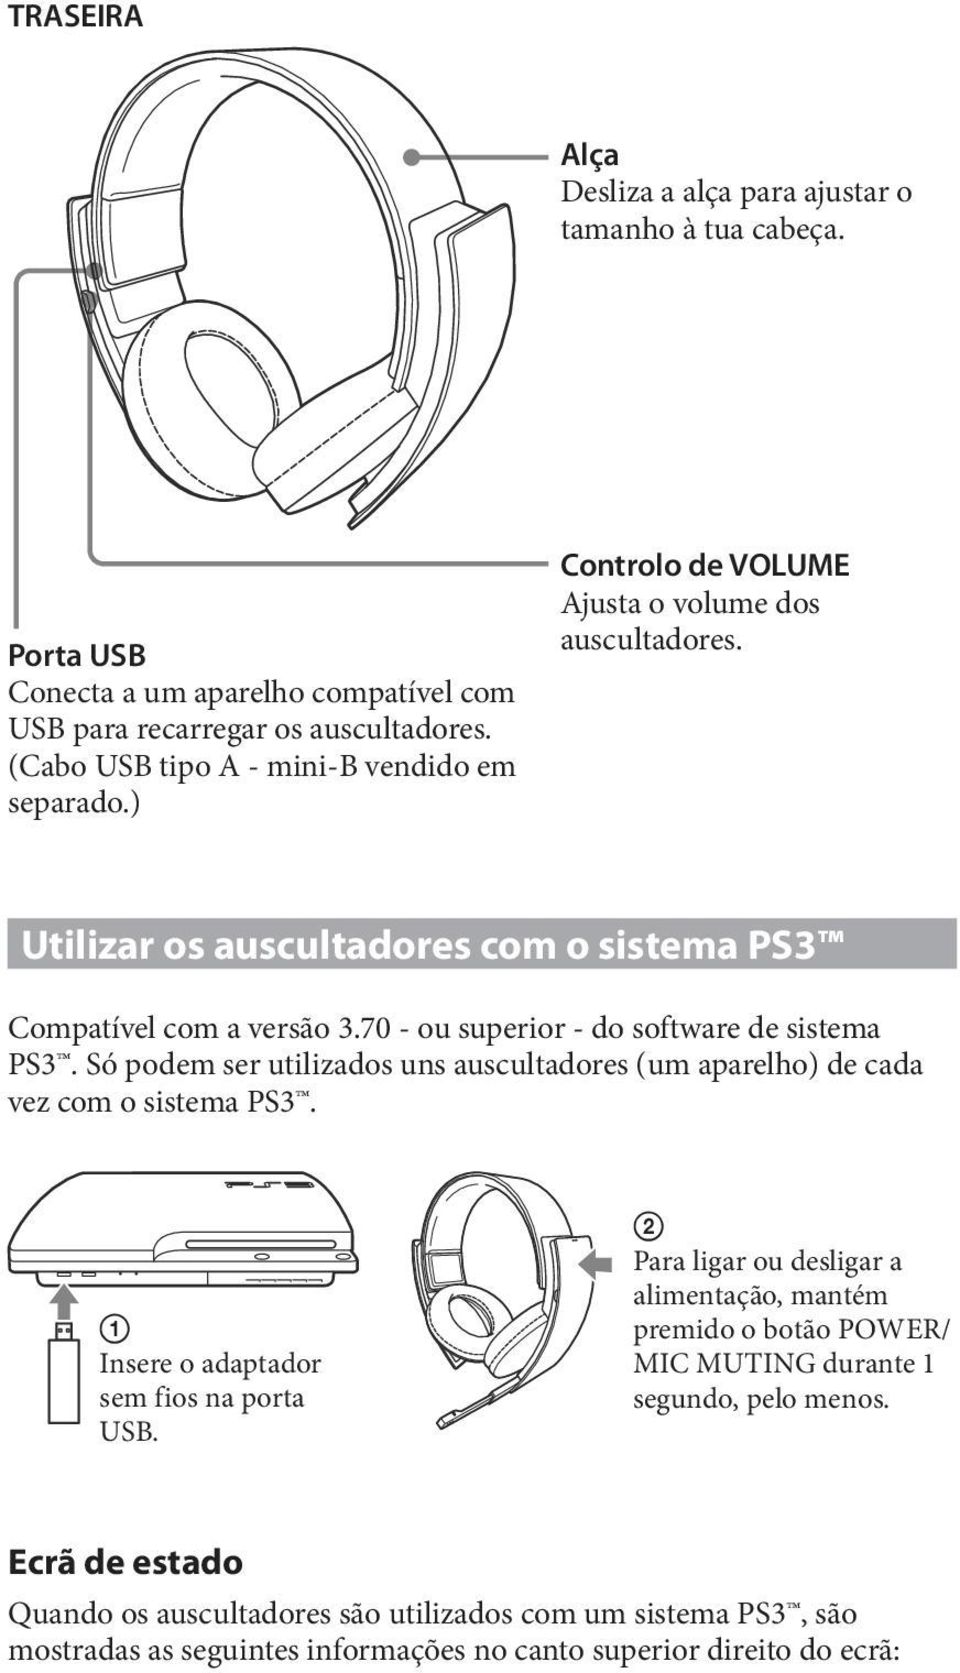 70 - ou superior - do software de sistema PS3. Só podem ser utilizados uns auscultadores (um aparelho) de cada vez com o sistema PS3. Insere o adaptador sem fios na porta USB.